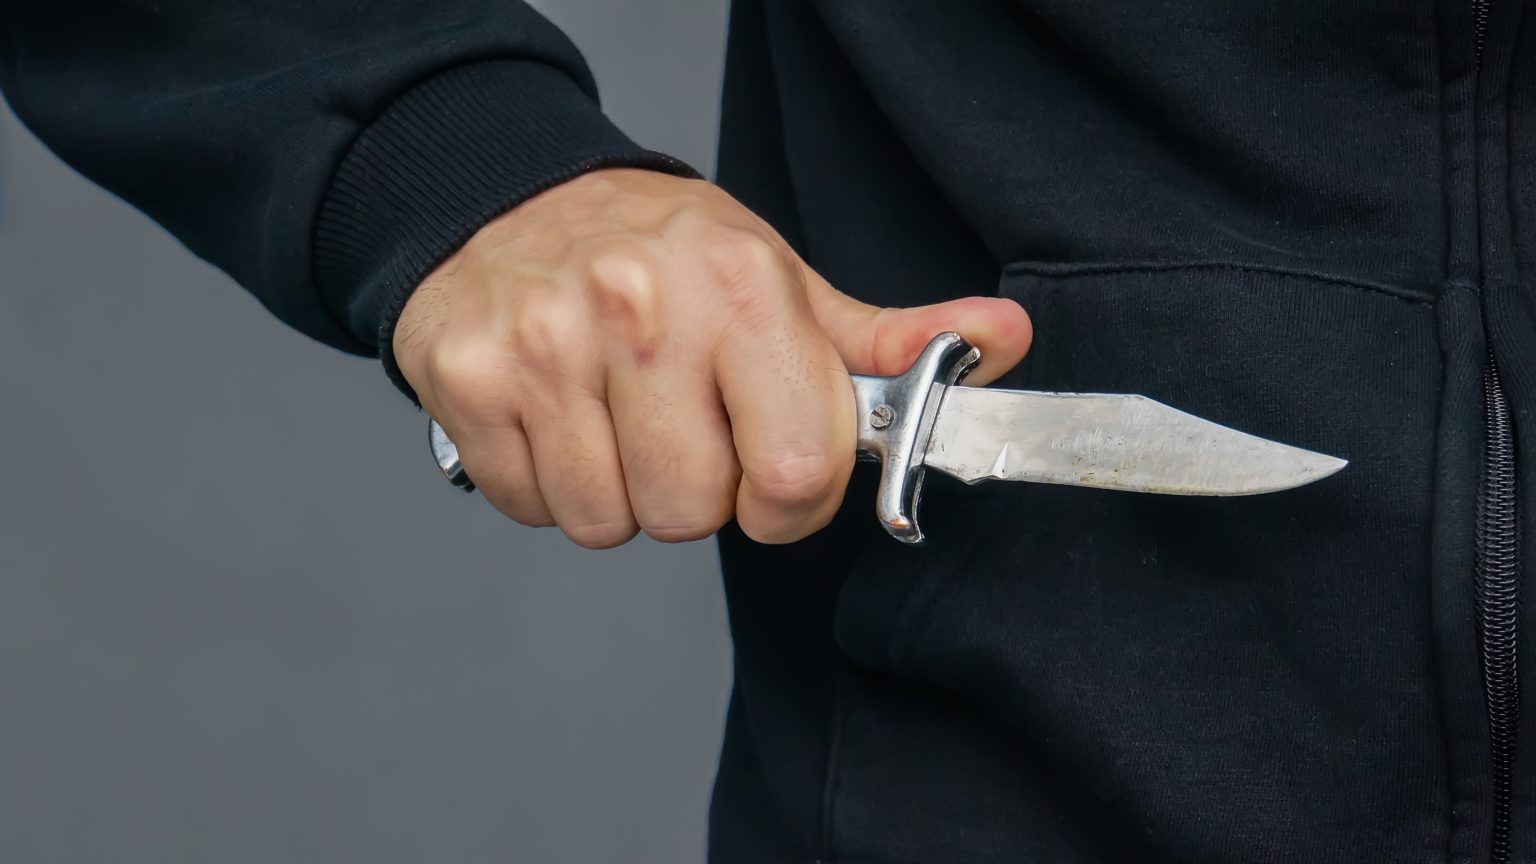 Razbojništvo u Splitu: 24-godišnjak uhićen nakon pljačke uz prijetnju nožem